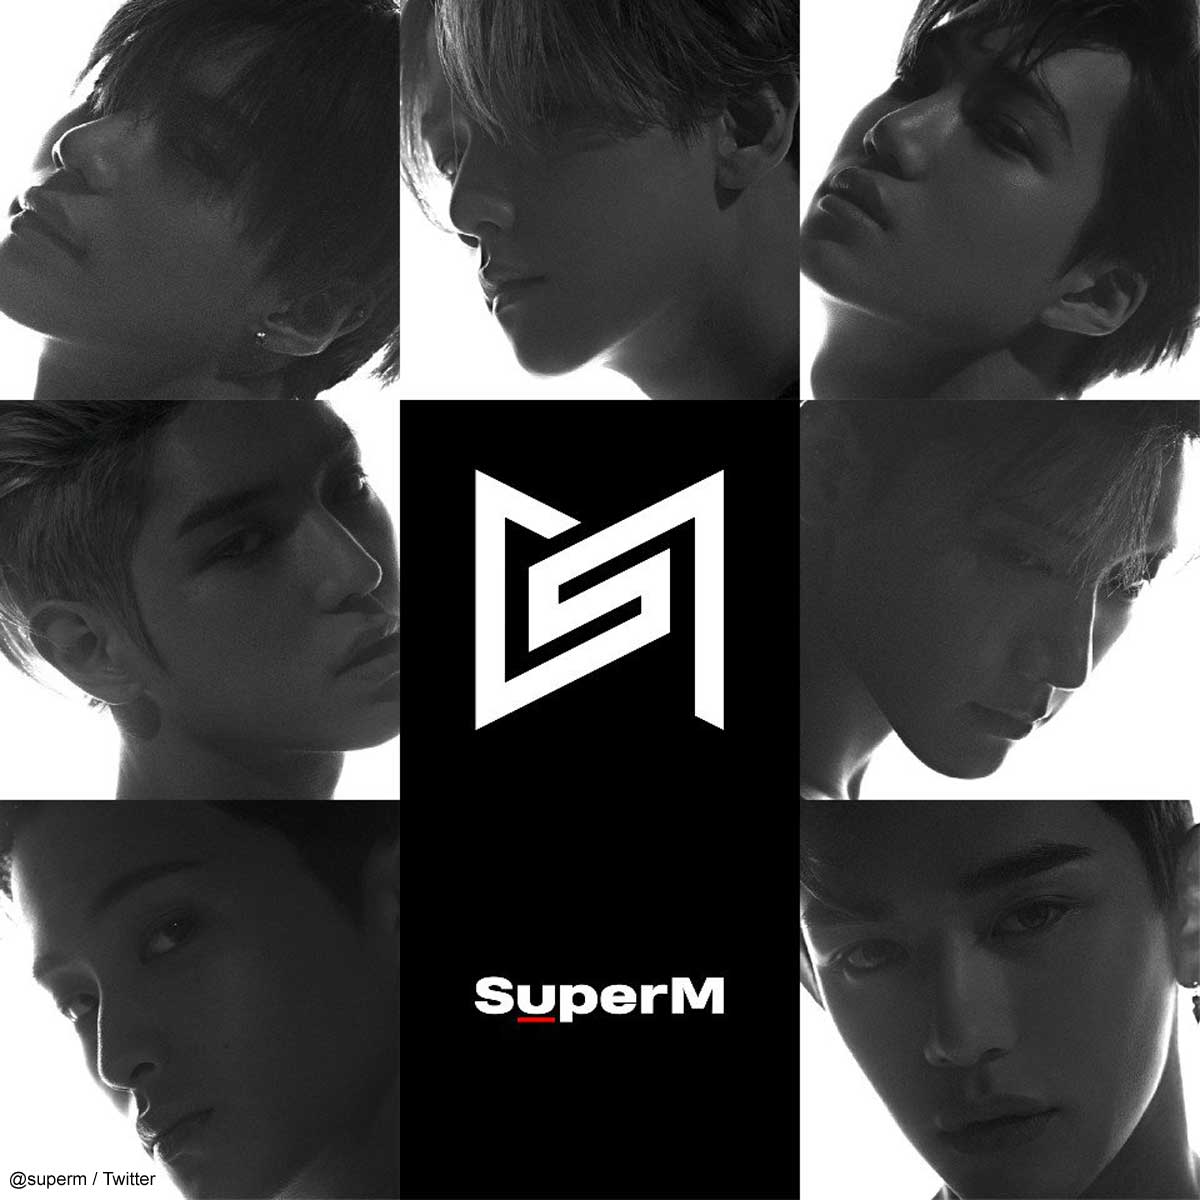 SMエンターテインメントの“アベンジャーズ”「Super M」、1stアルバム10 